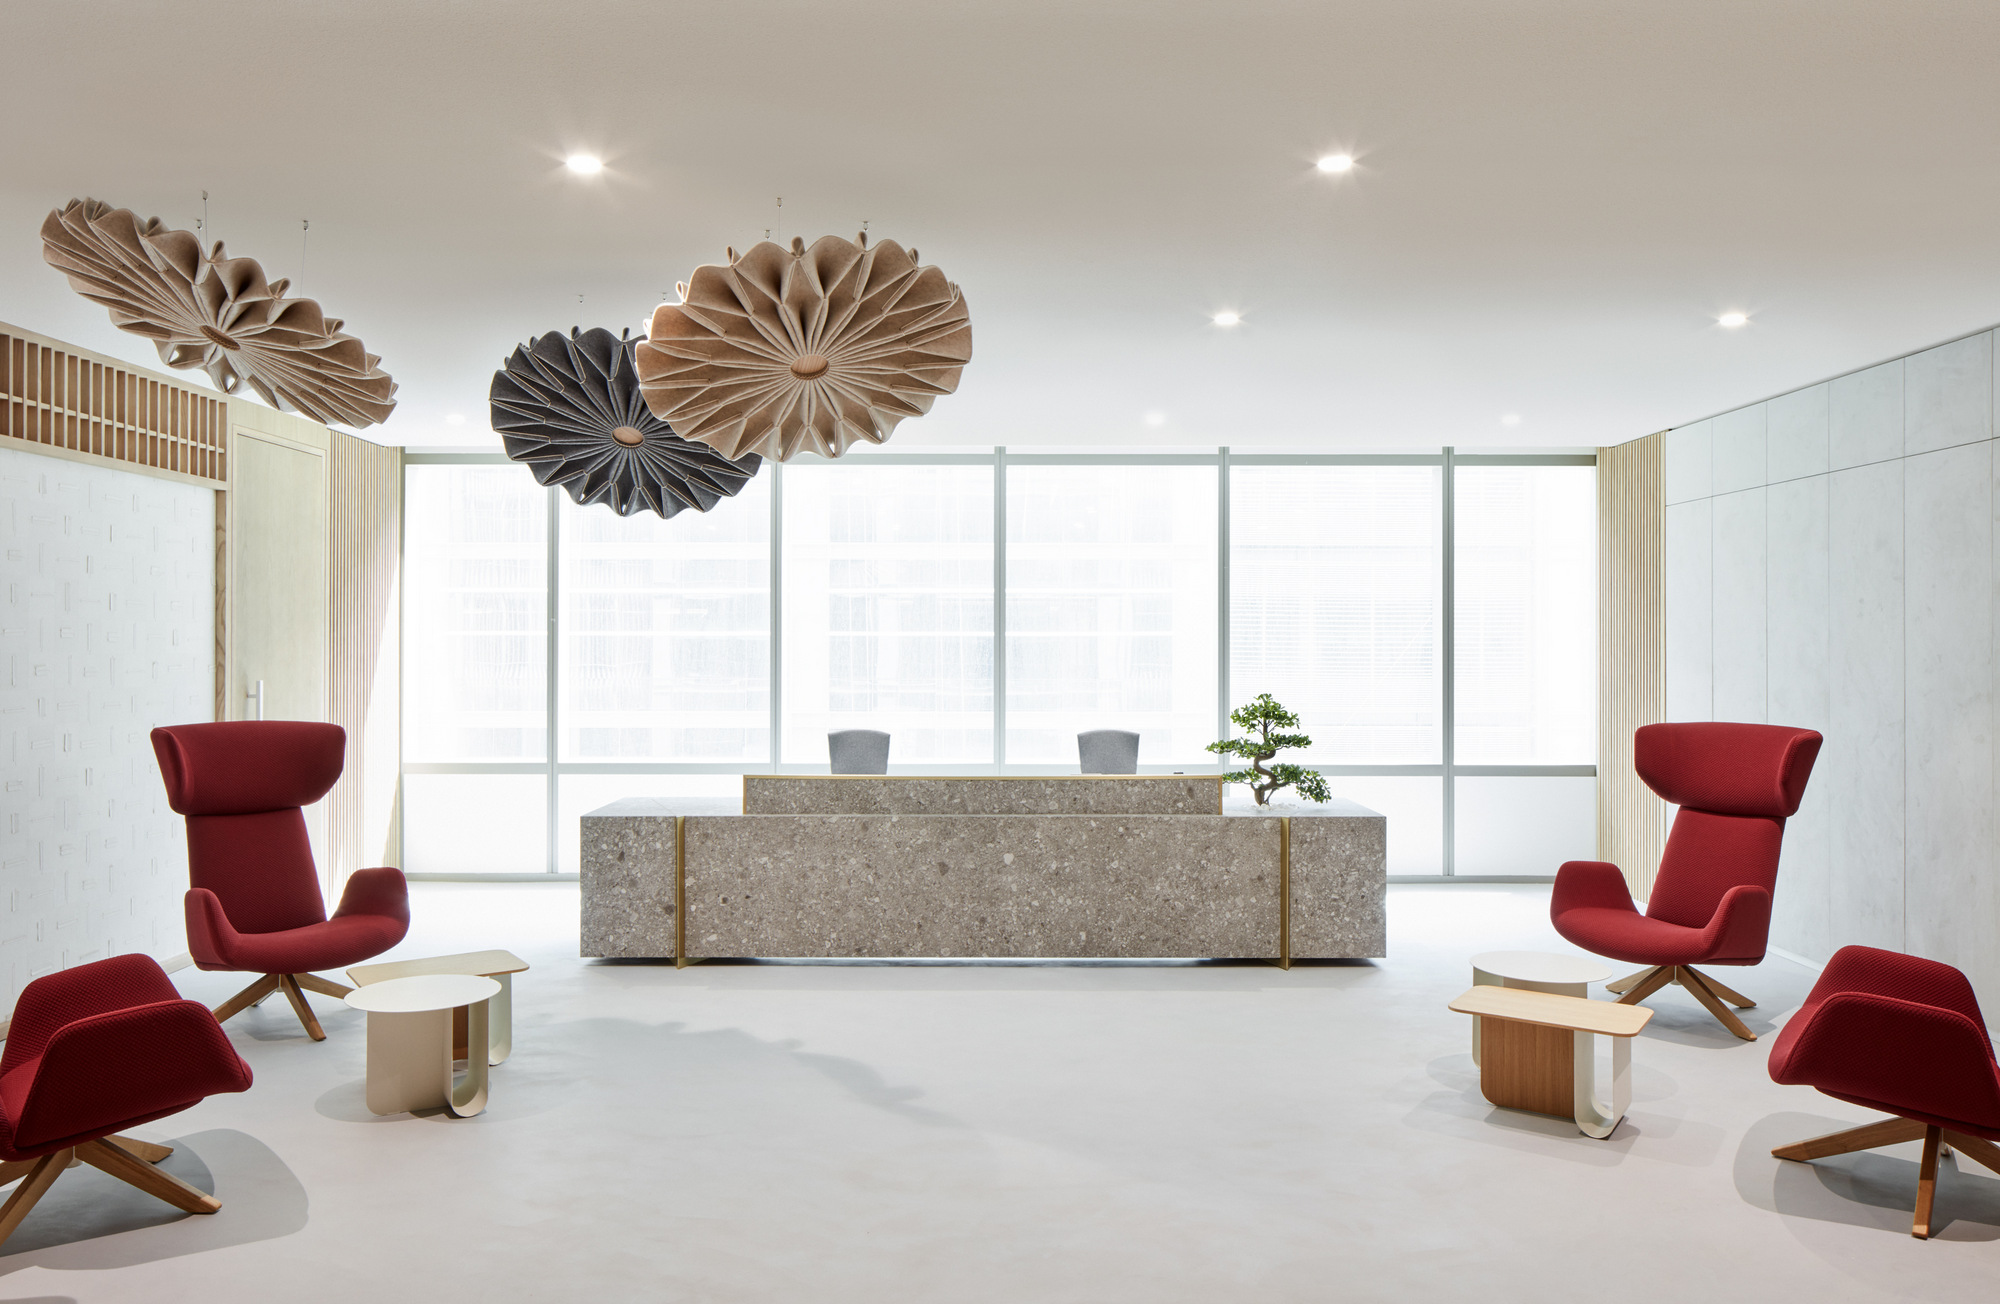 武田制药公司迪拜办事处|ART-Arrakis | 建筑室内设计的创新与灵感